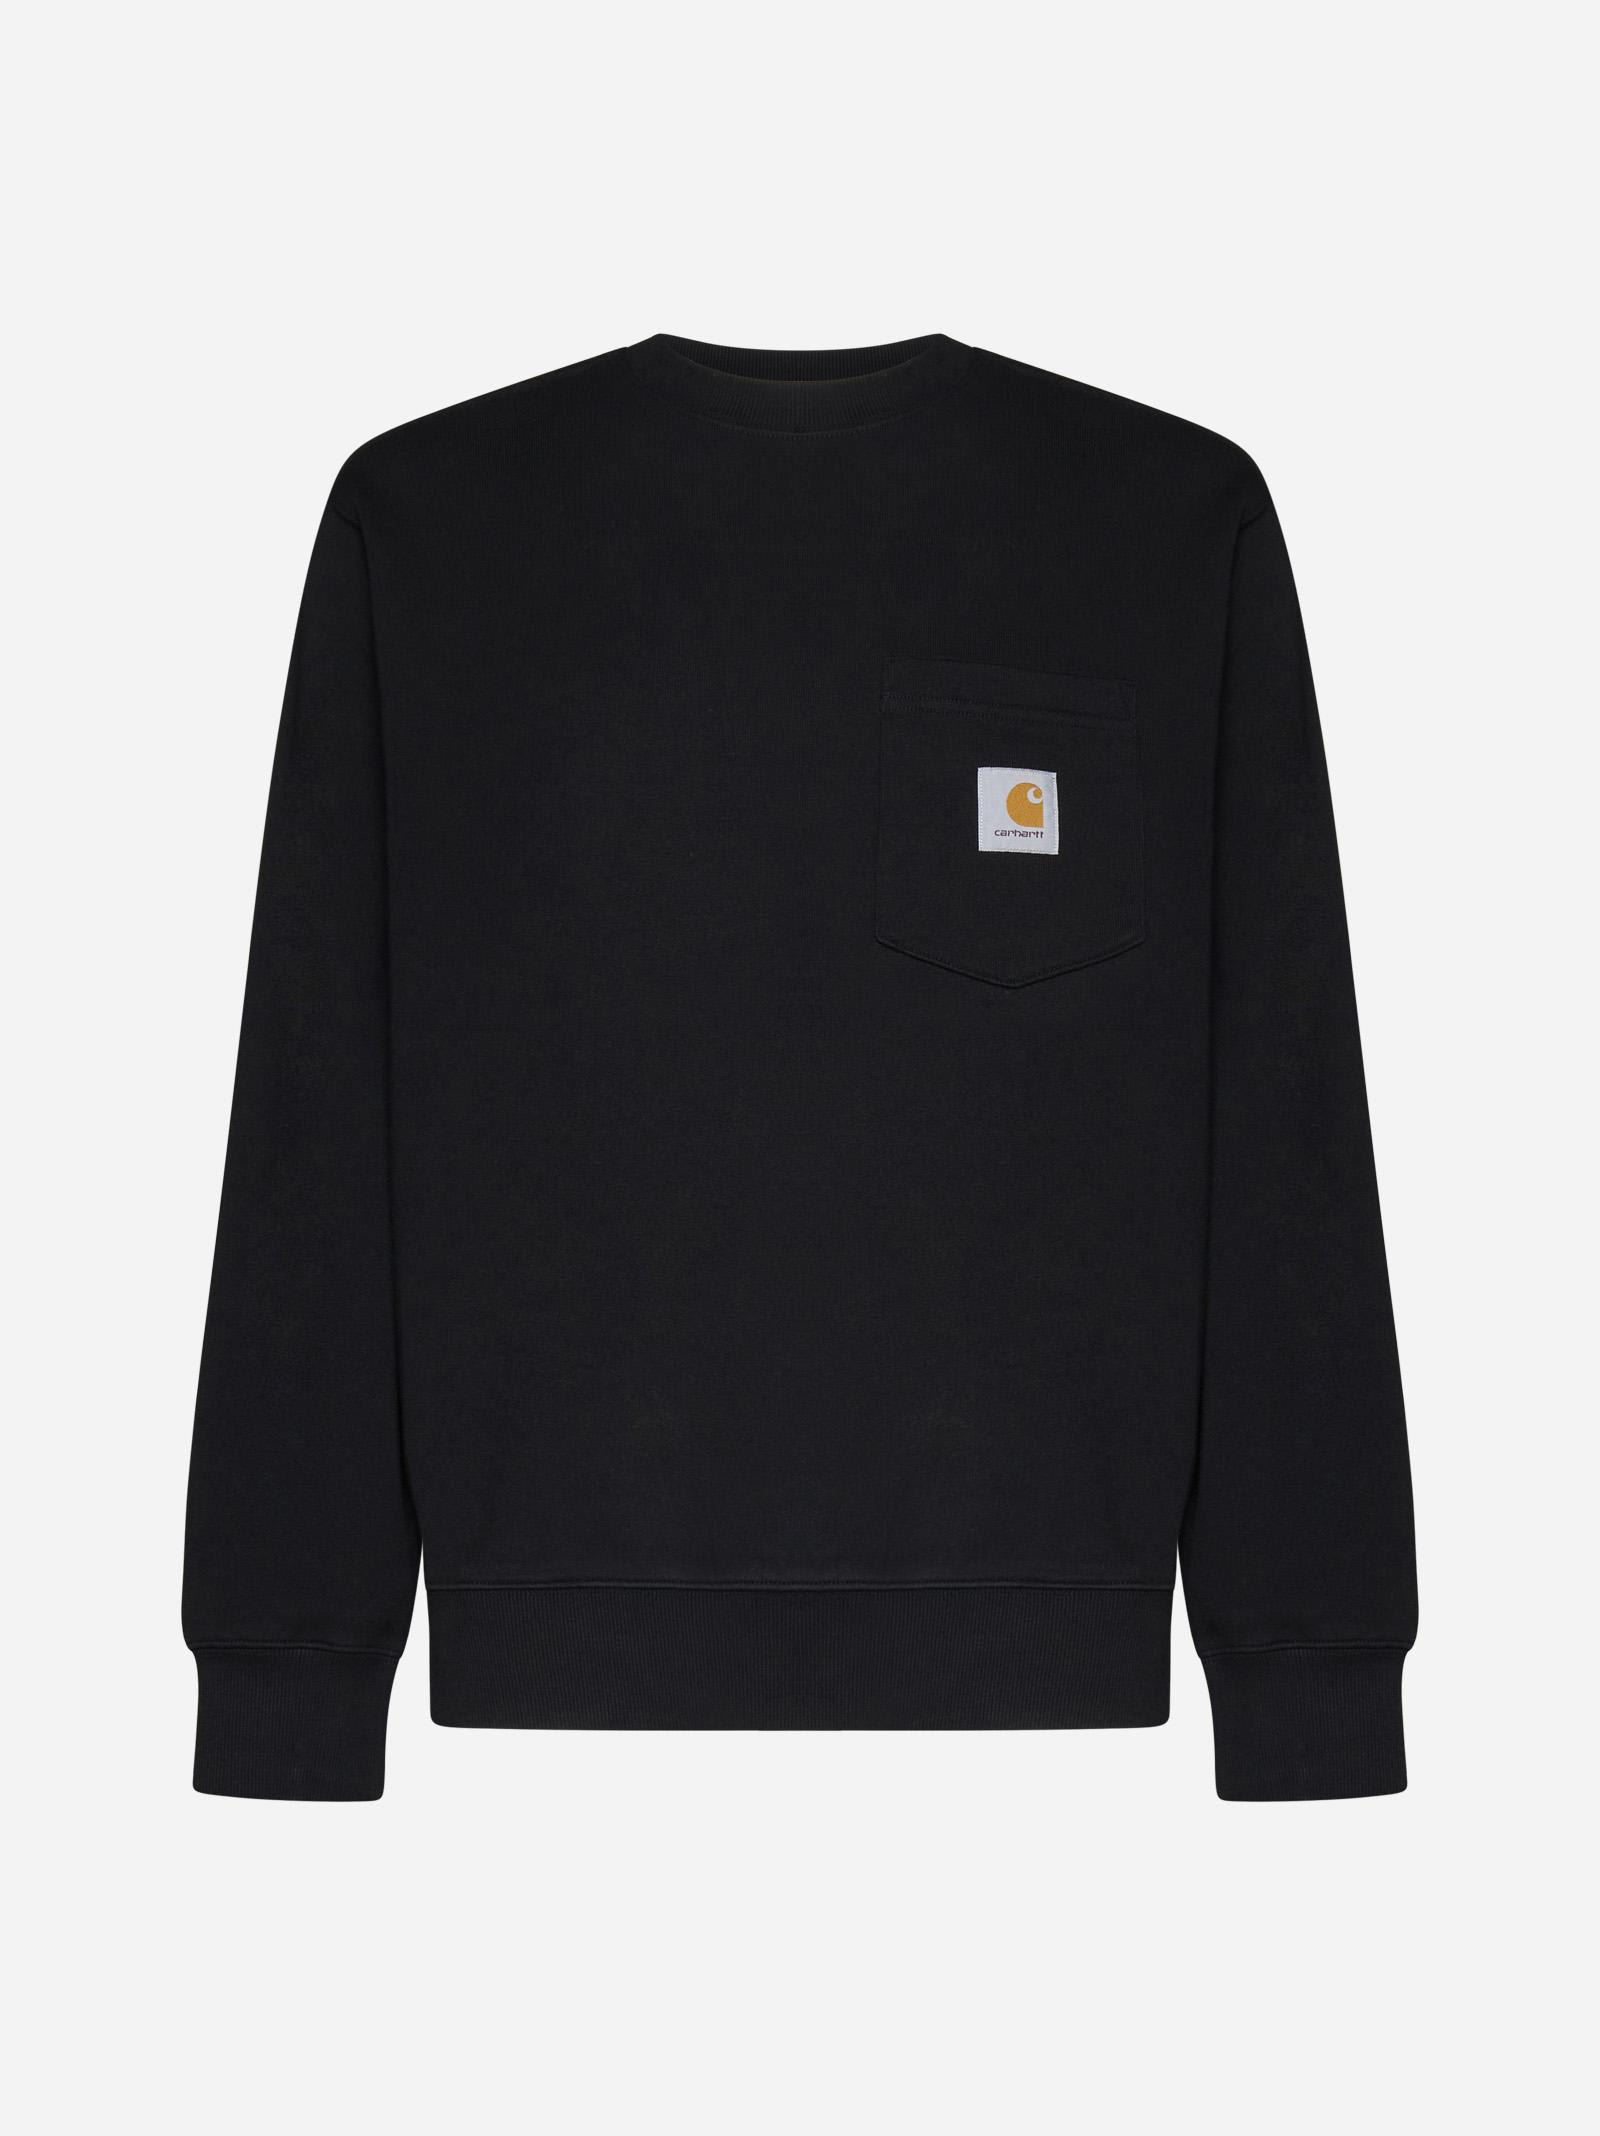 Carhartt Chest Pocket Cotton Sweatshirt In Black